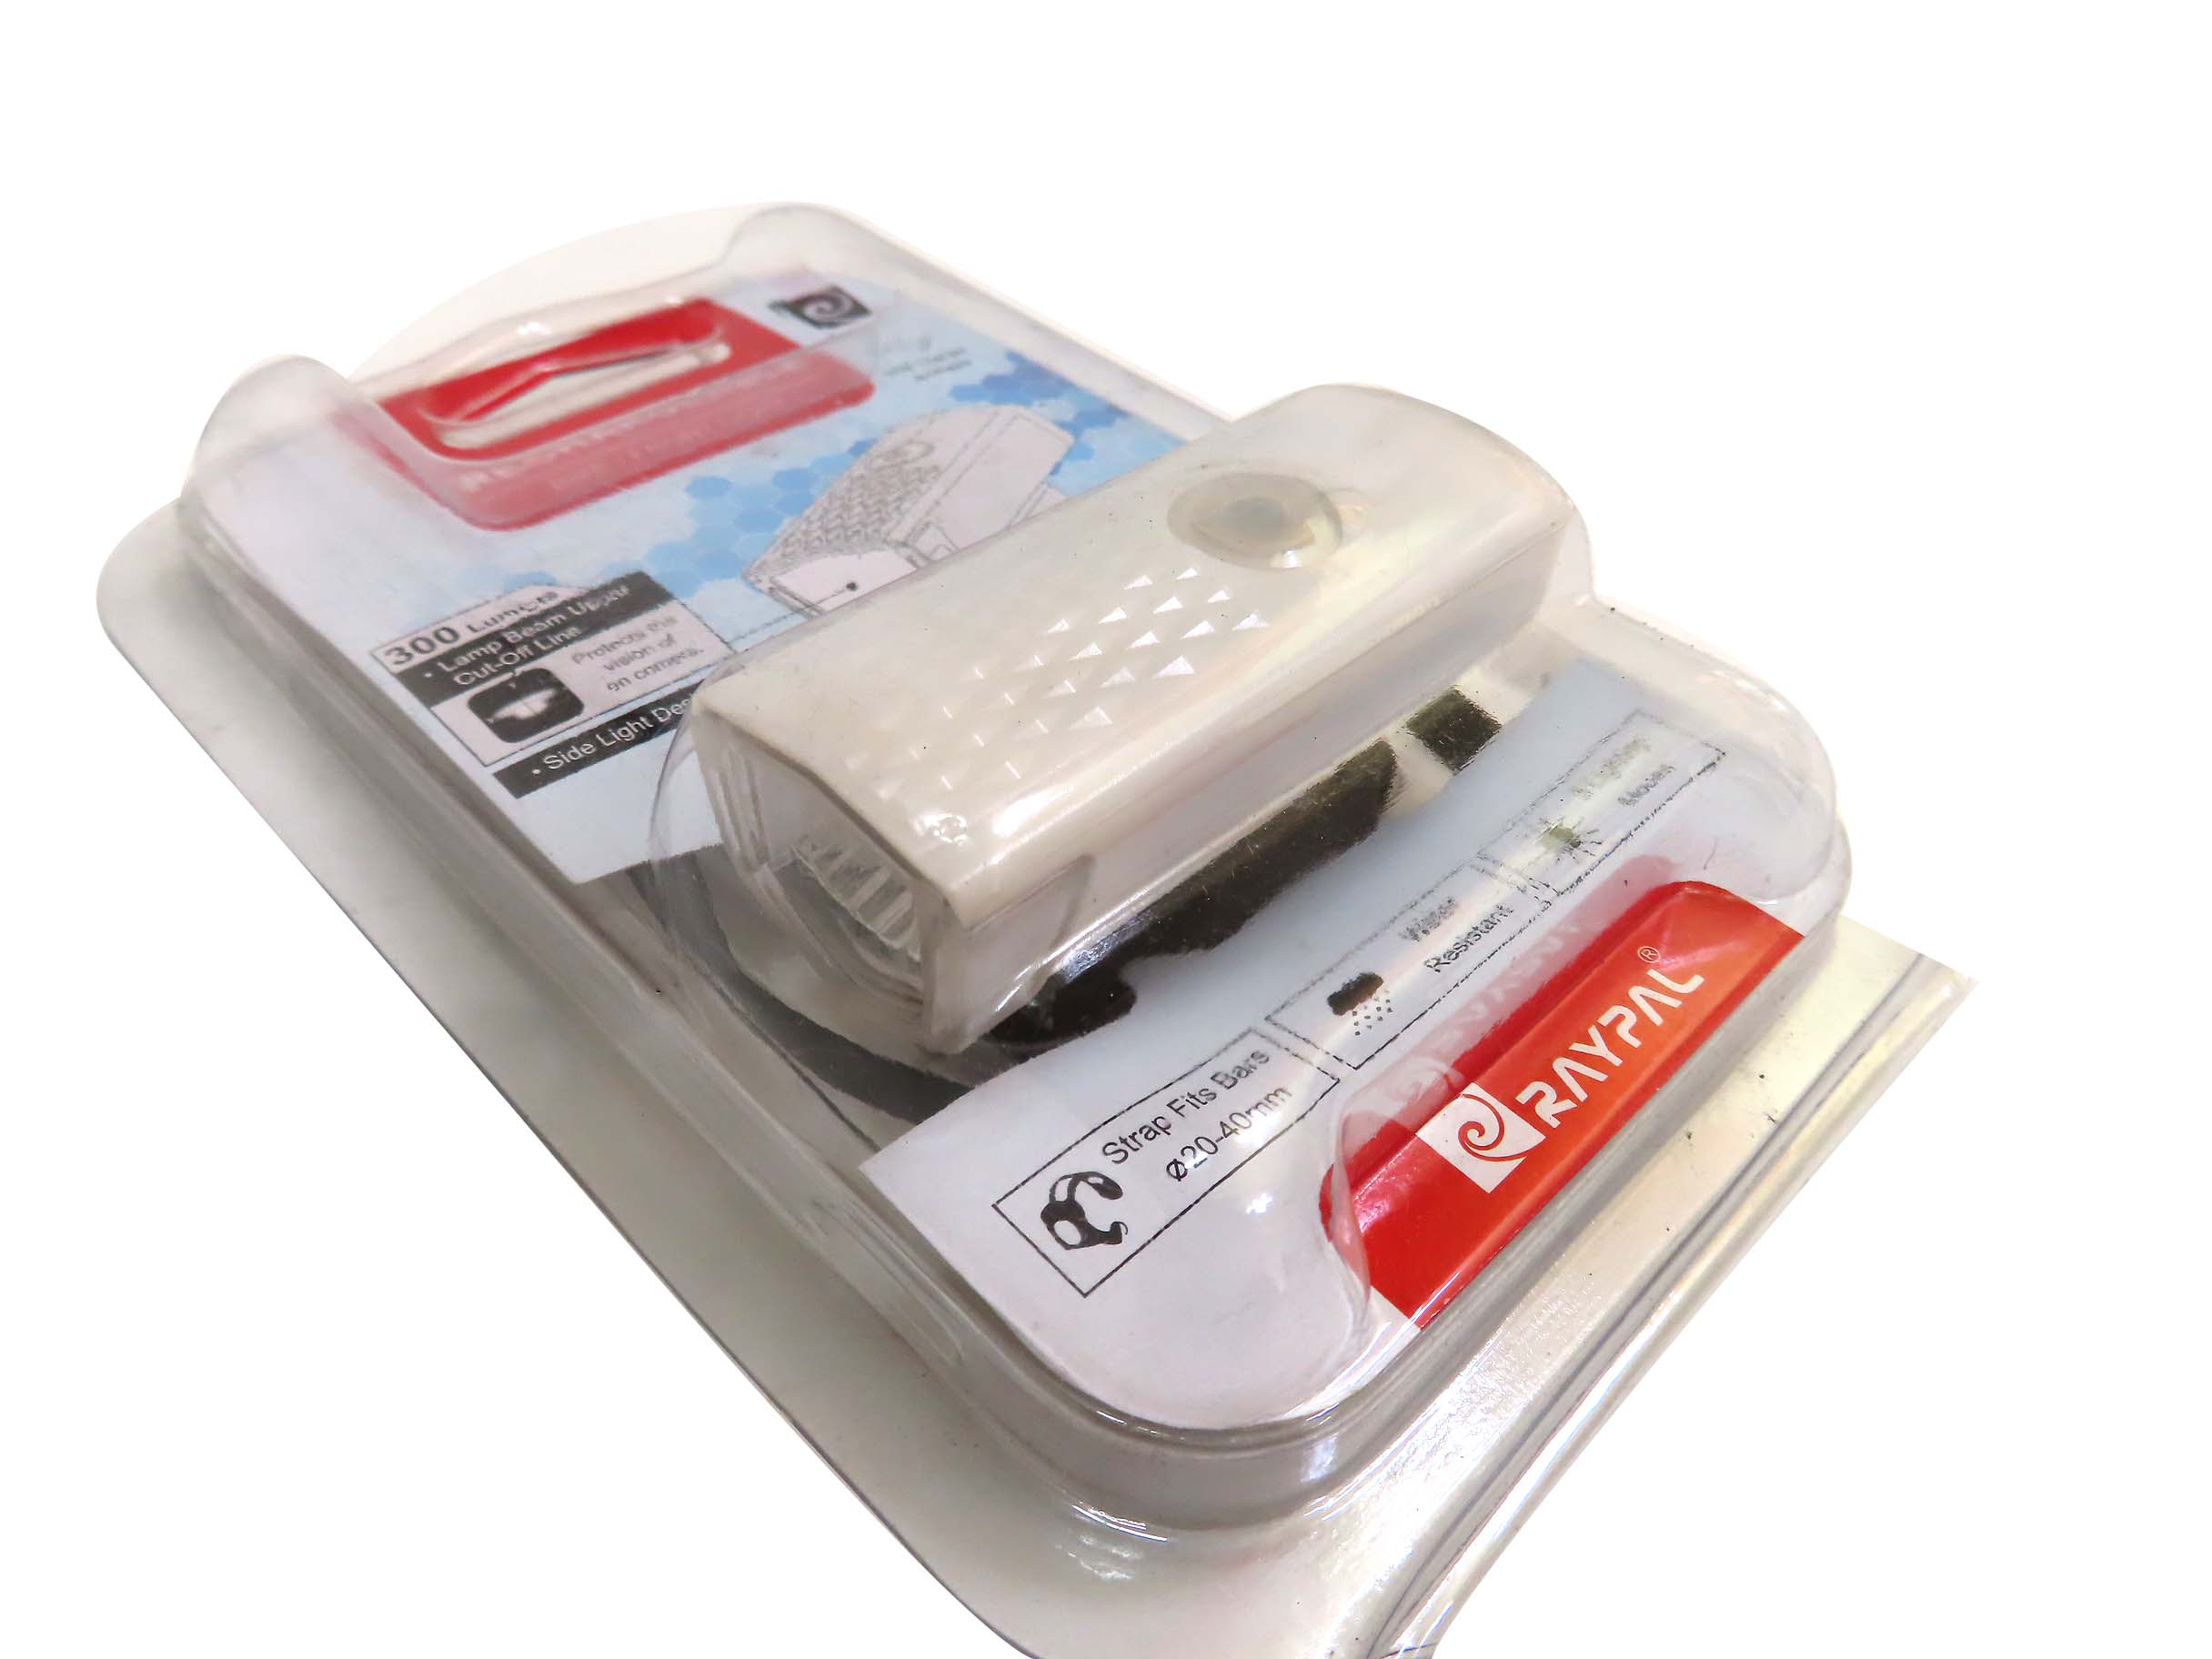 라이트(충전식 USB충전, RAYPAL RPL-2255, 백색/흑색)